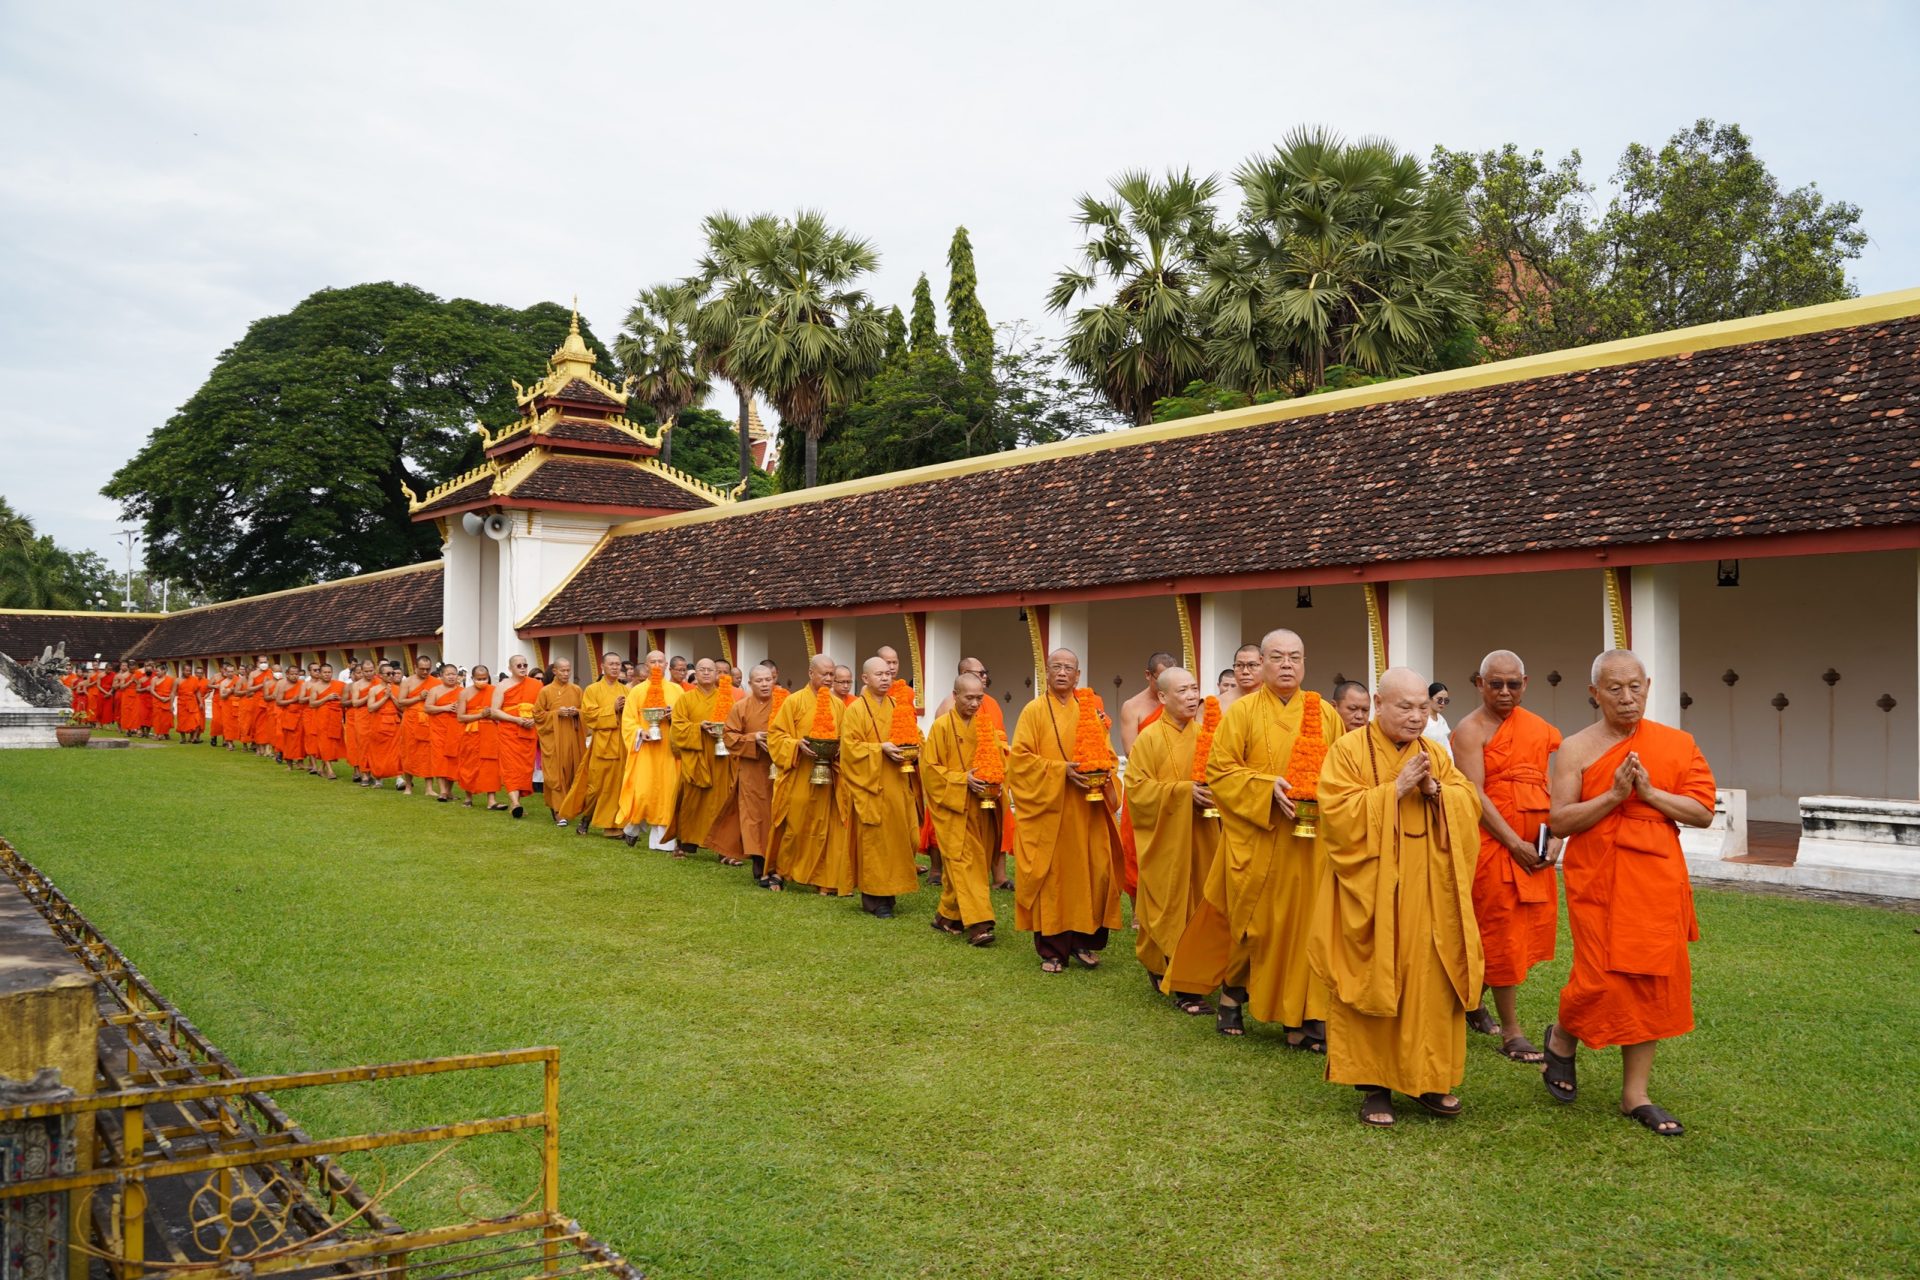 Hòa thượng Chủ tịch: Phật giáo Việt – Lào tiếp tục thúc đẩy giáo dục truyền thống đoàn kết, hữu nghị đặc biệt giữa hai nước